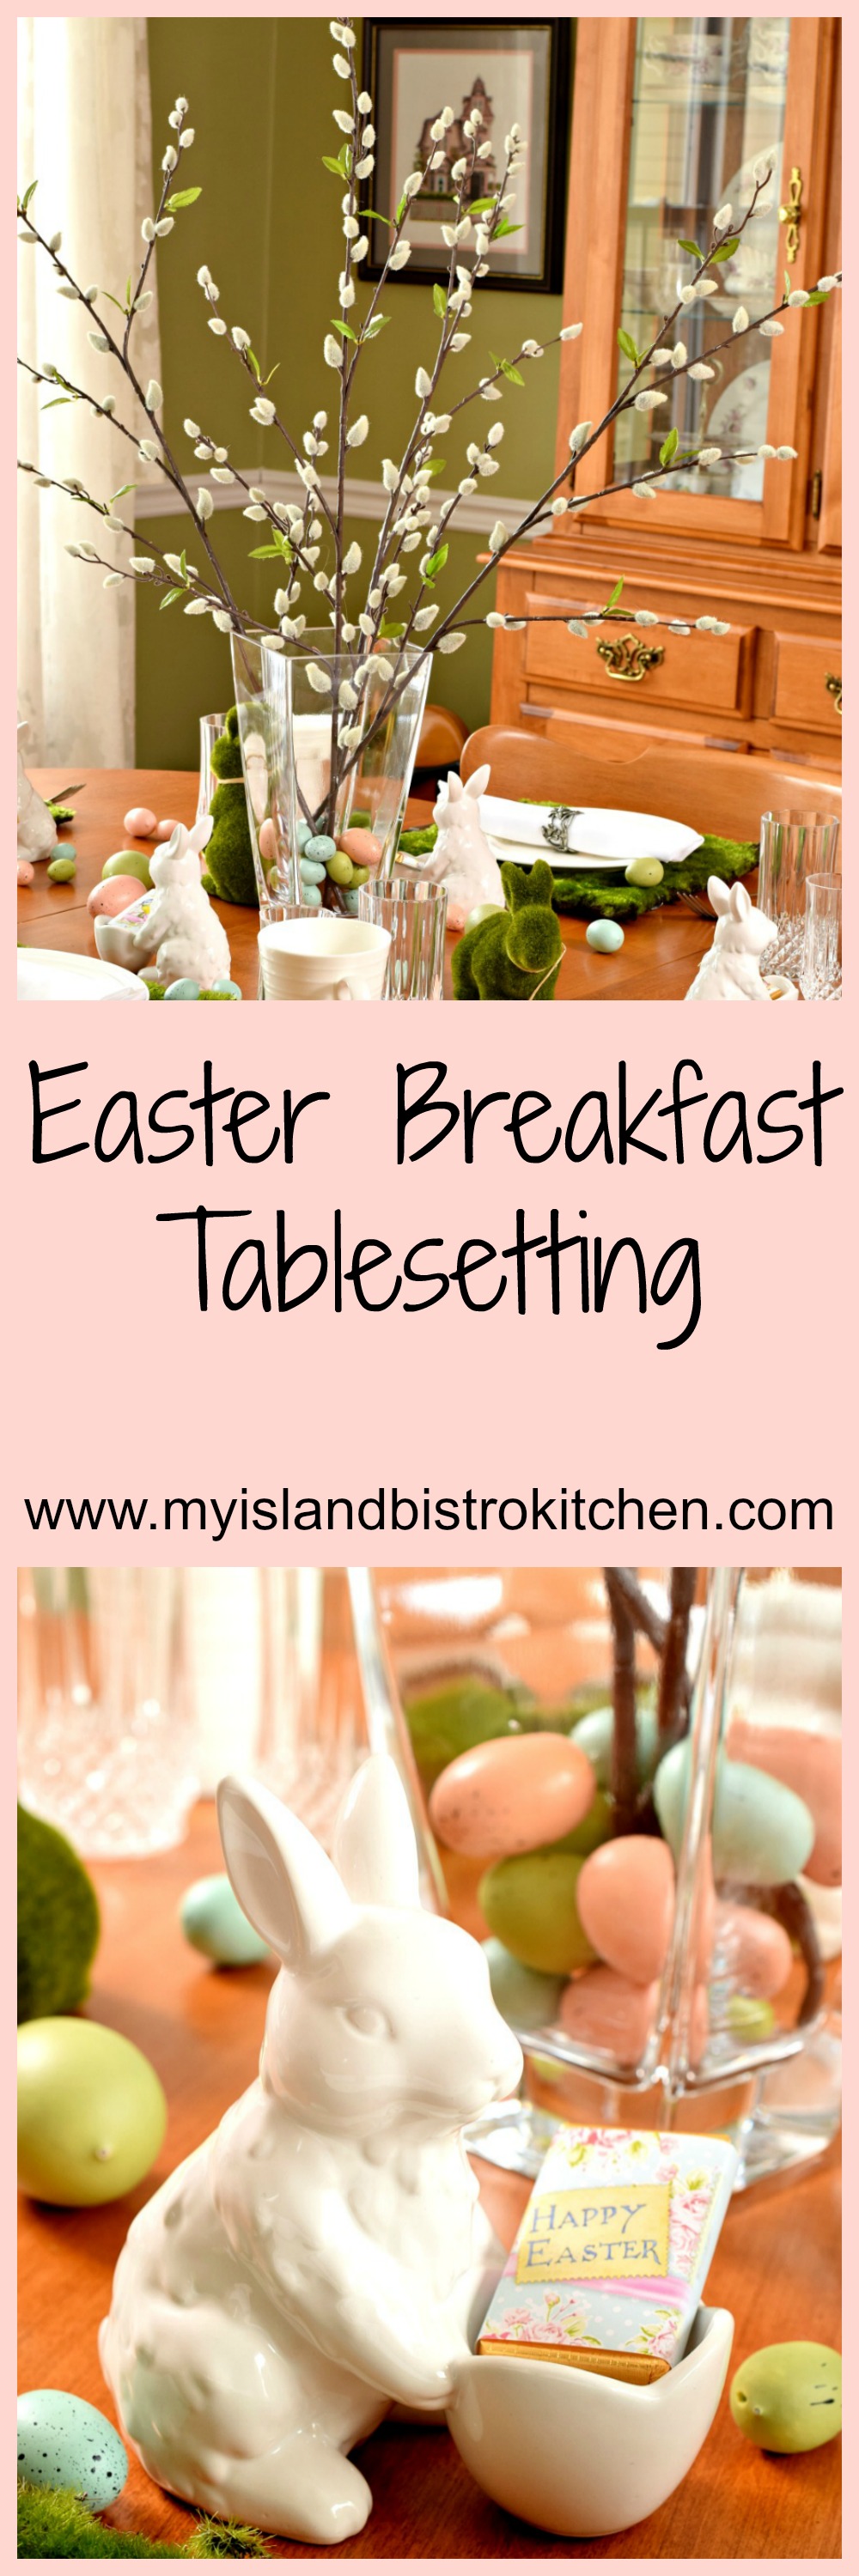 Easter Breakfast Tablesetting